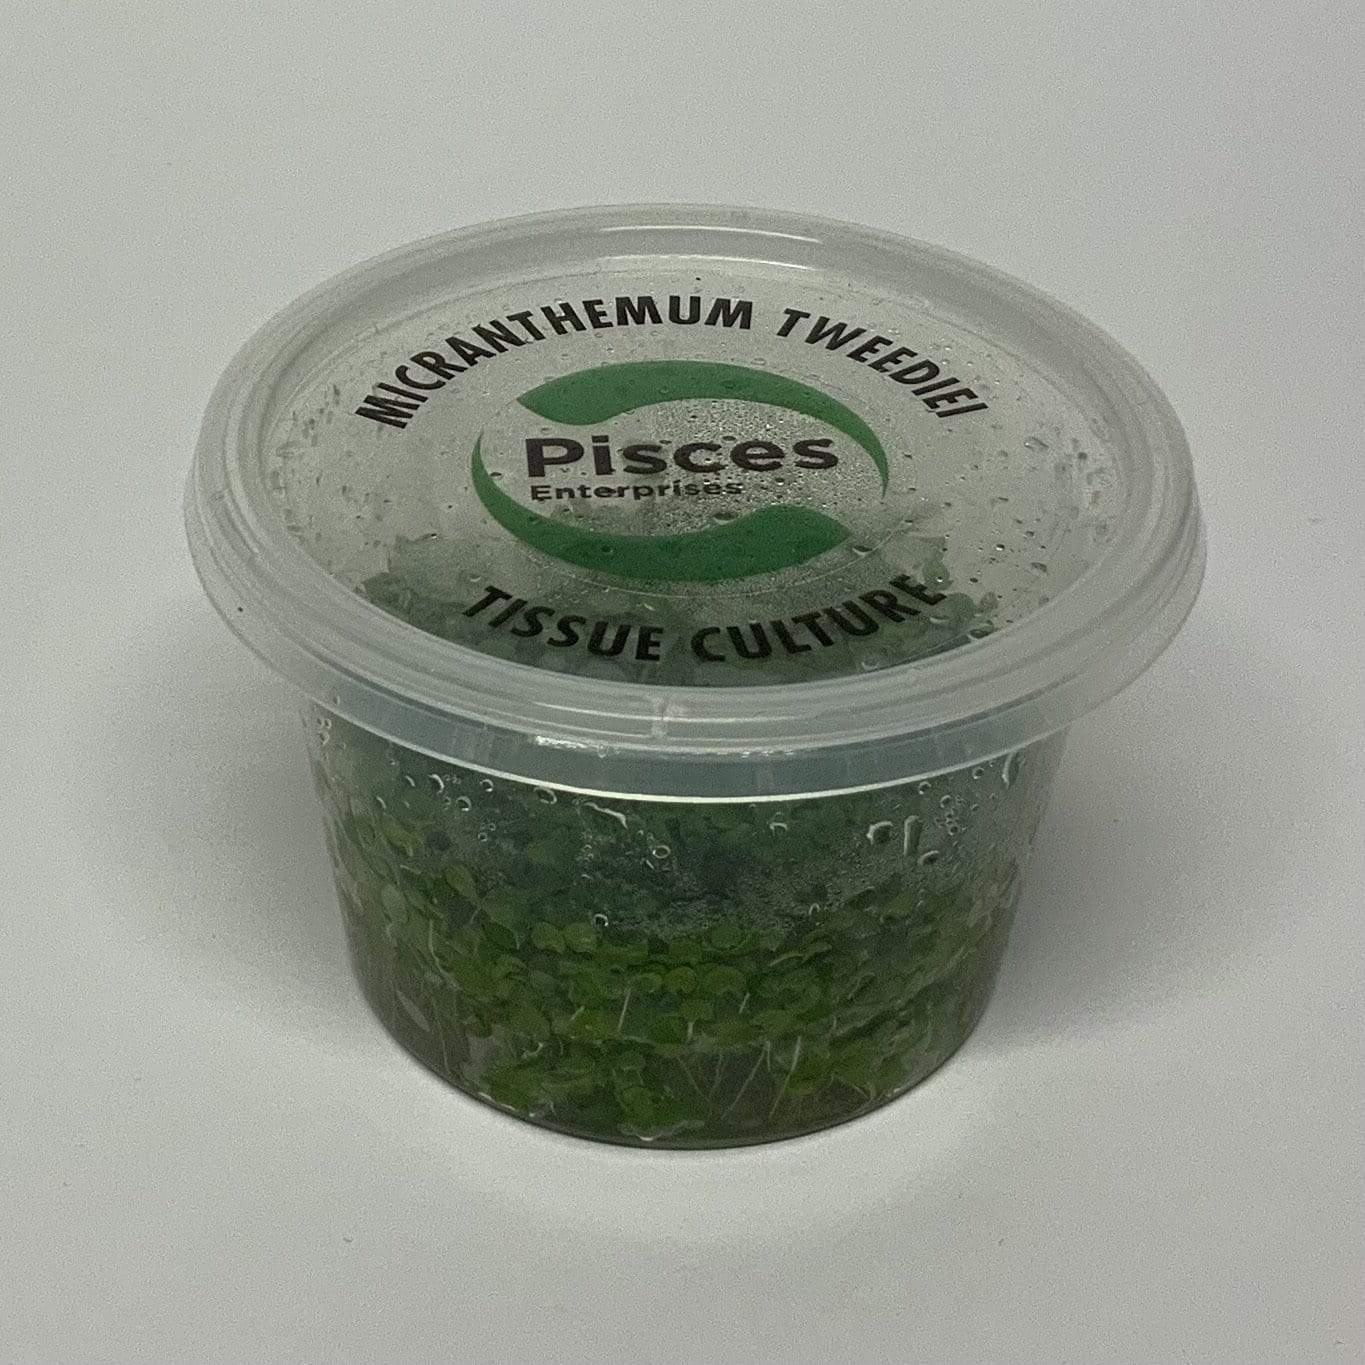 Pisces Enterprises Tissue Culture Micranthemum Umbrosum “Takashi Carpet” Tissue Culture